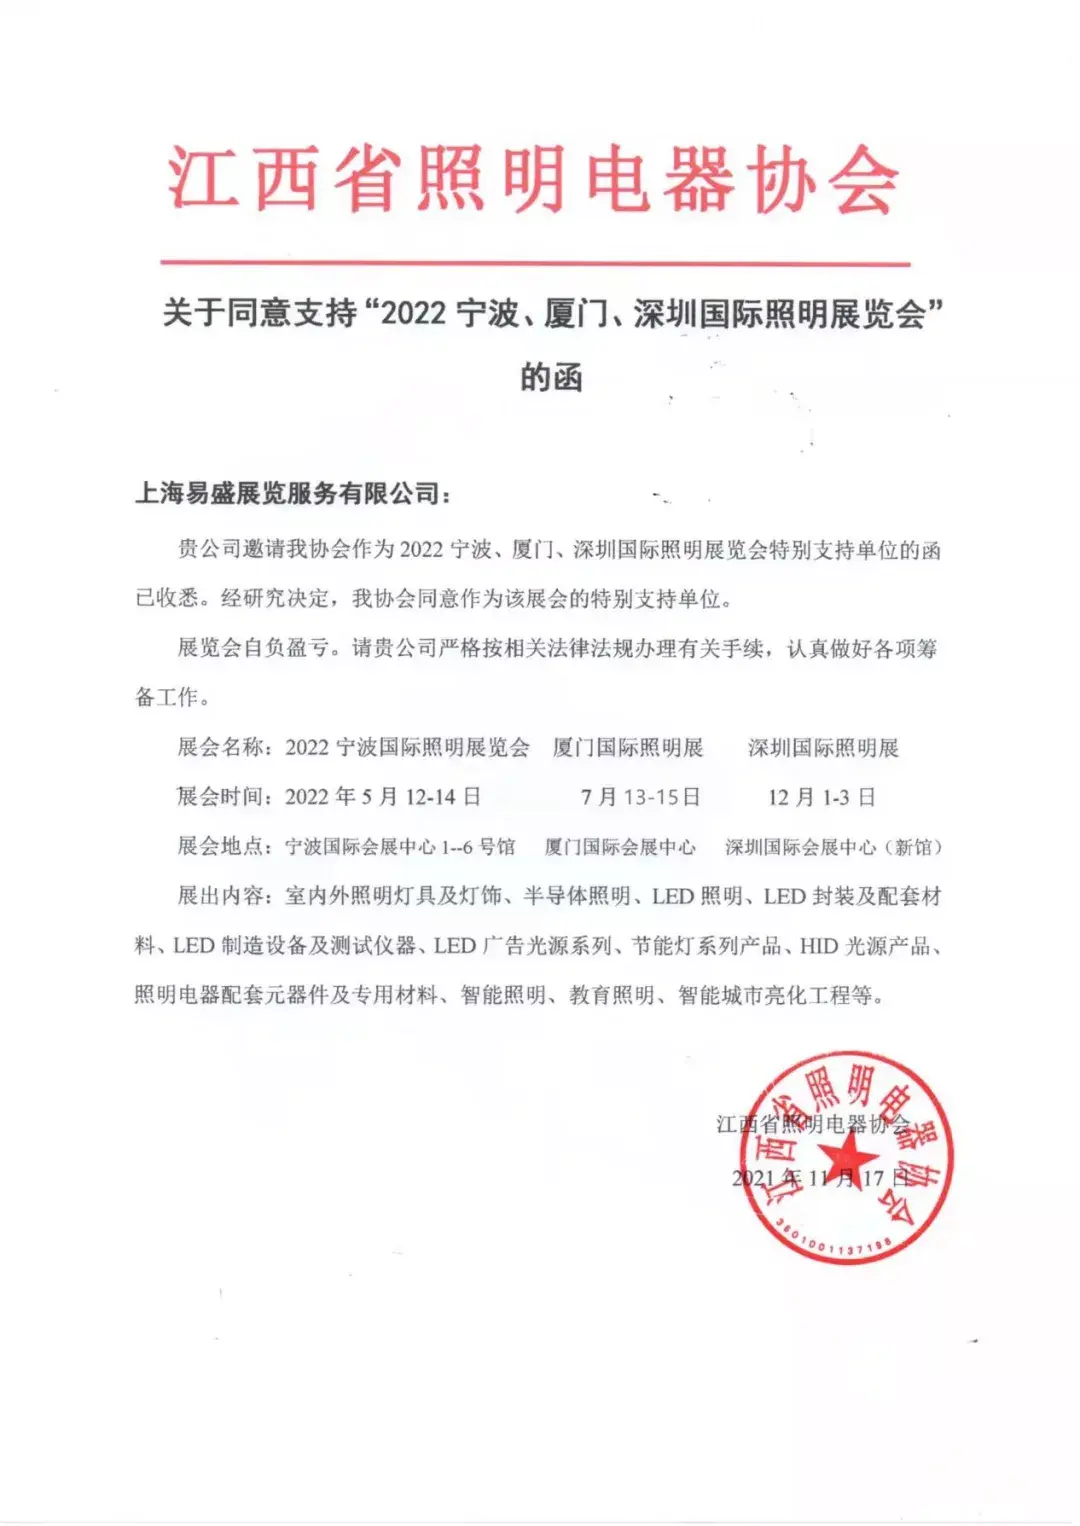 三地照明电器协会发函对宁波厦门深圳照明展表示支持